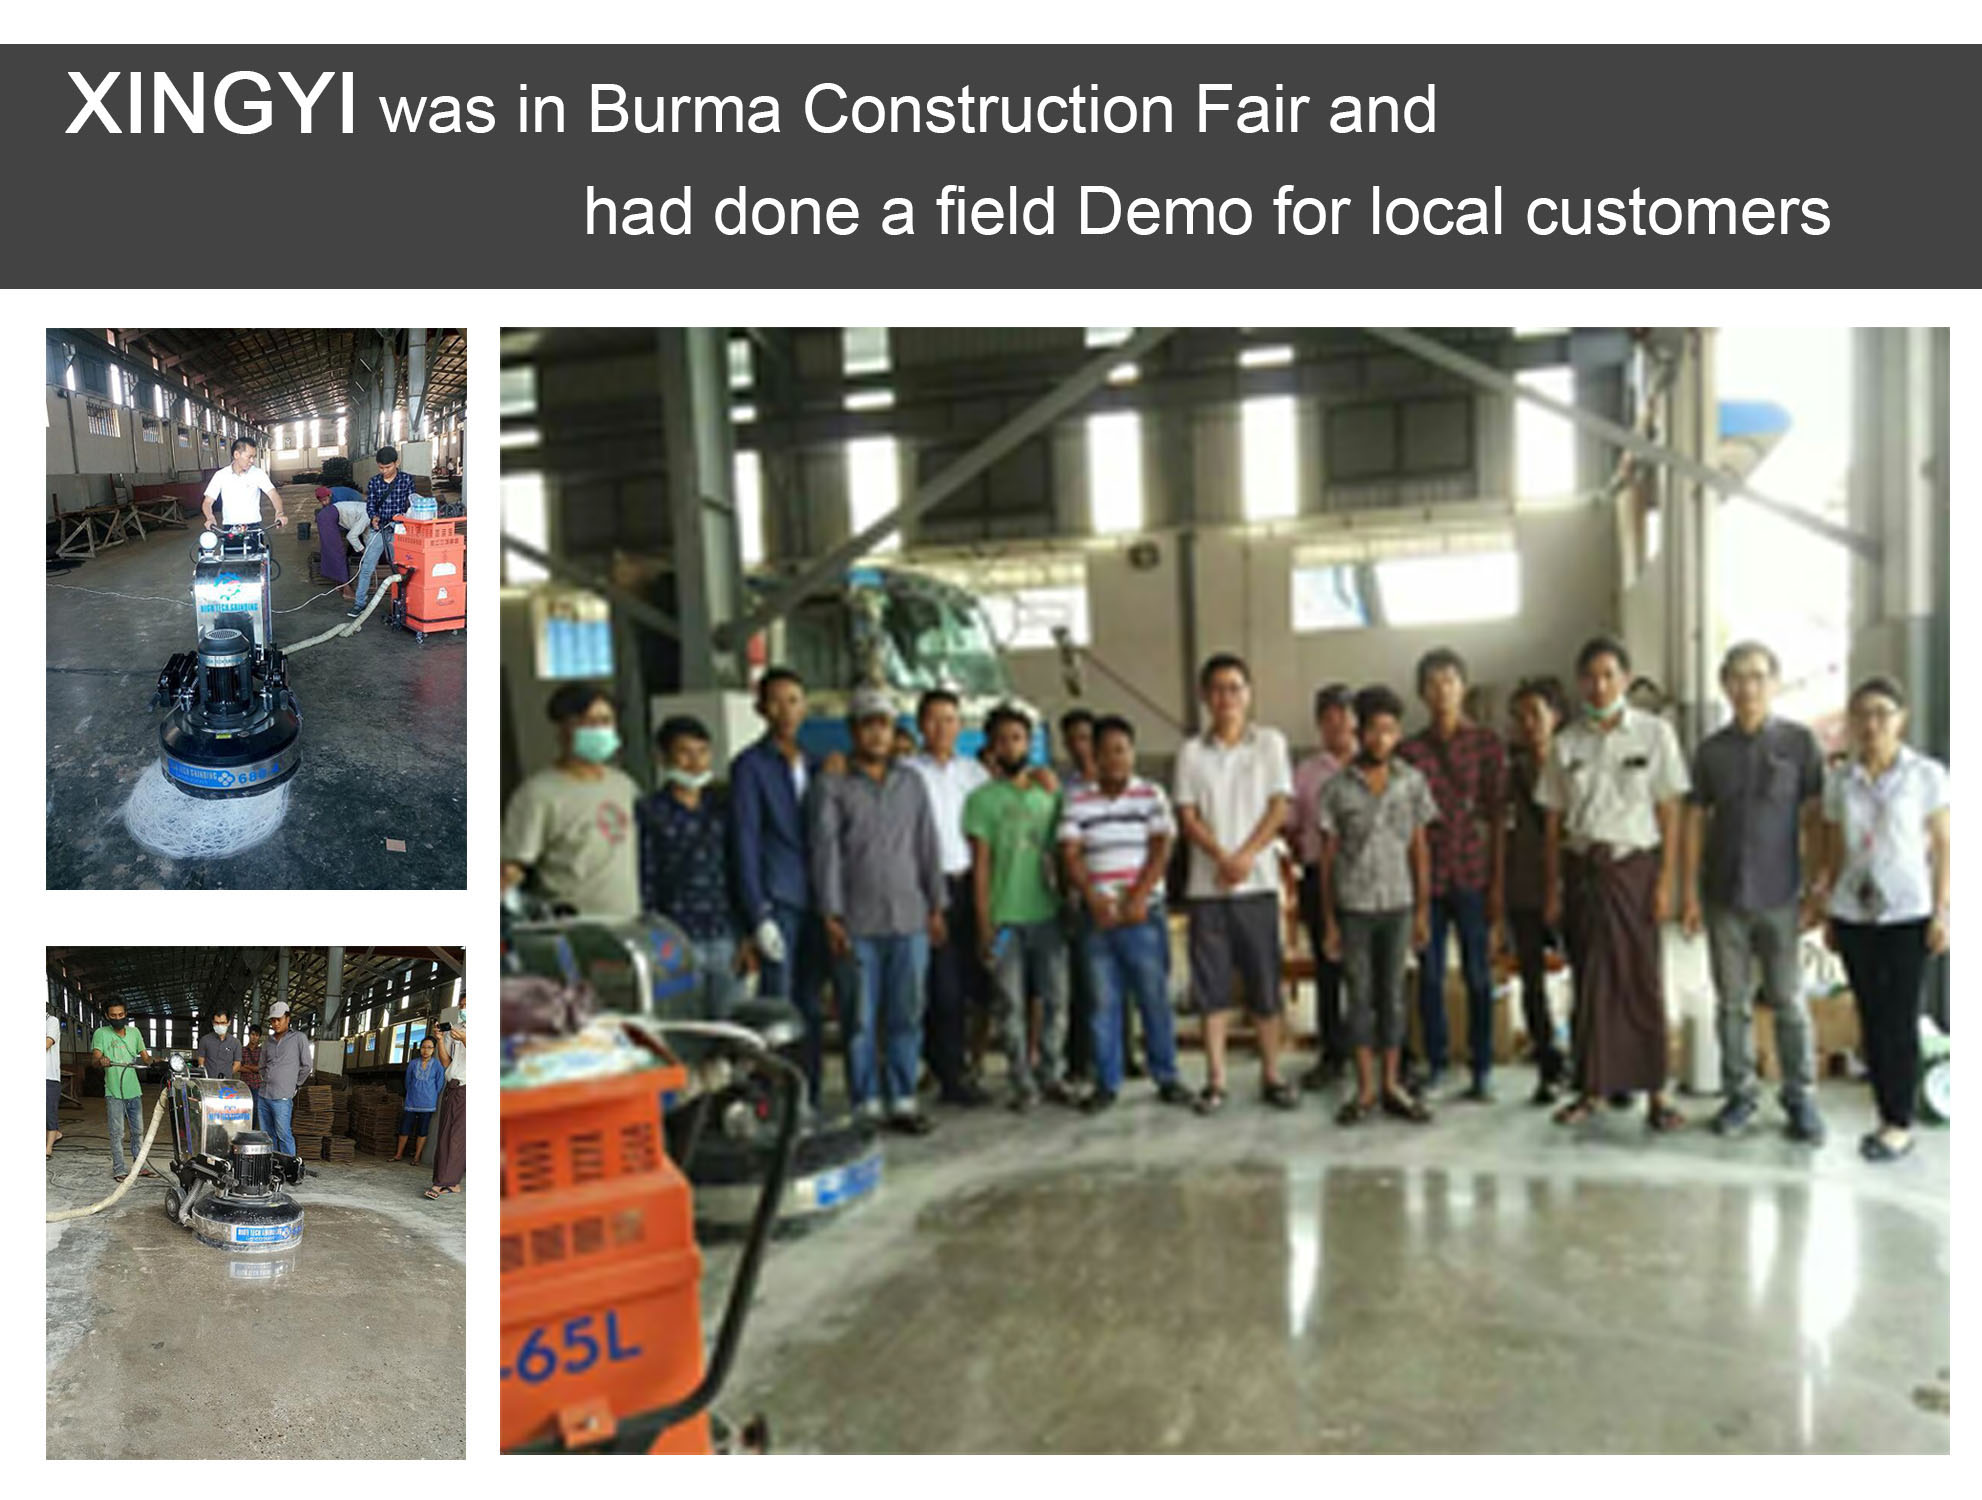 XINGYI 버마 건설 공정 되었고 지역 고객에 대 한 필드 데모를 완료 했다. 